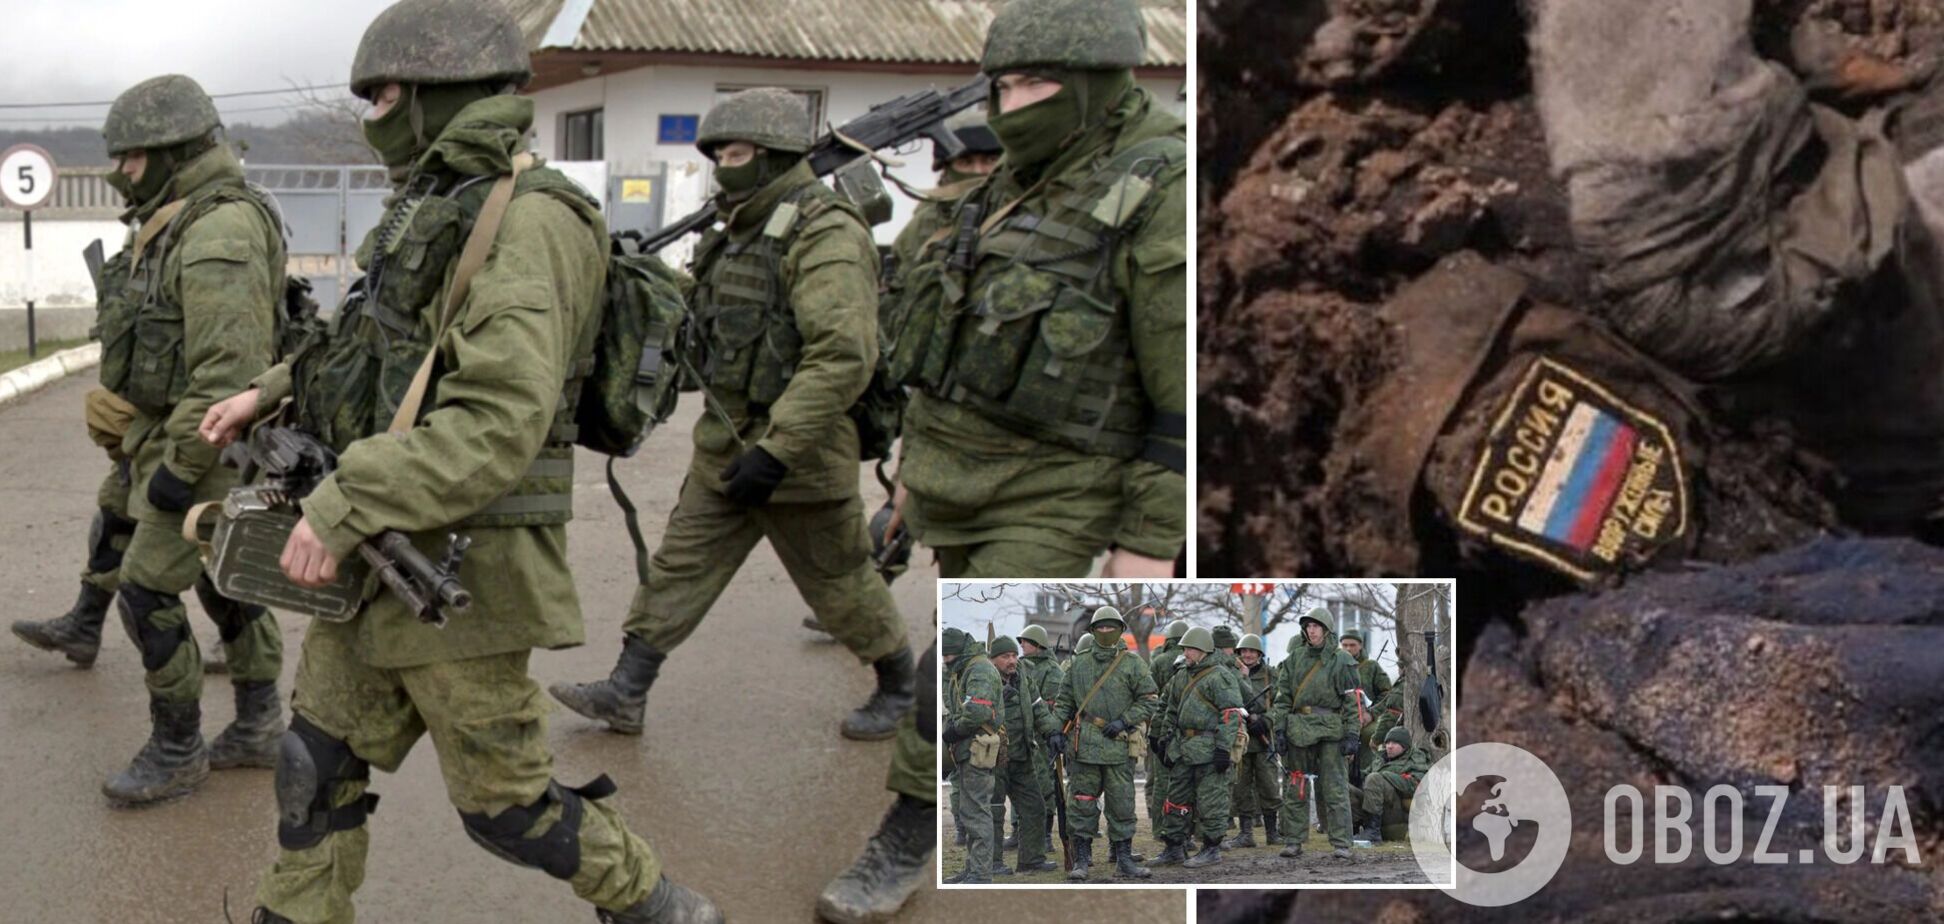 РФ проводит передислокацию войск из оккупированных районов Грузии для наступления на Украину, – британская разведка